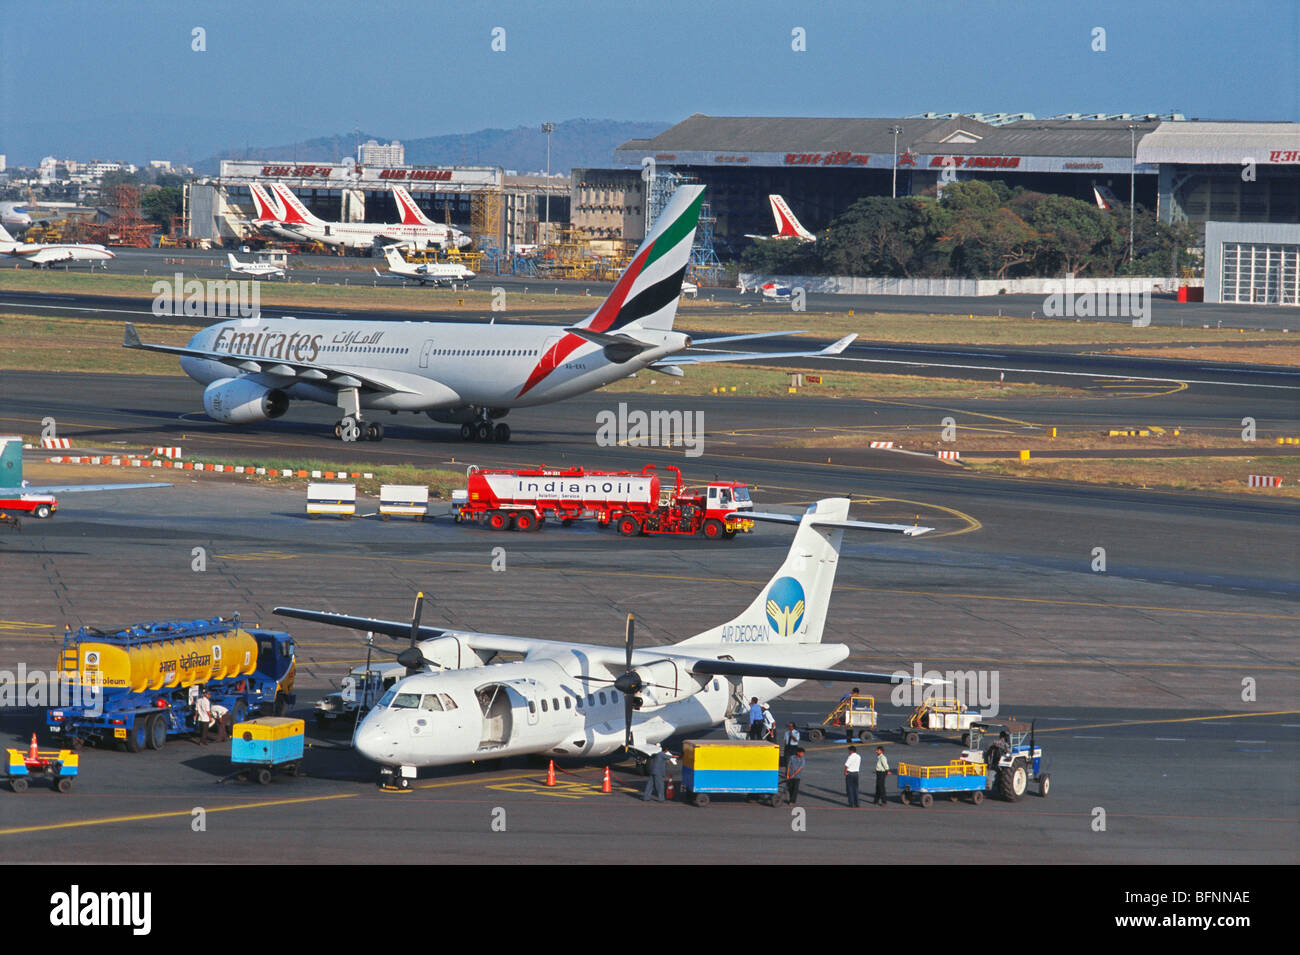 Avions Air India ; avion Emirates ; avion de ravitaillement en pétrole indien ; aéroport Santacruz ; Bombay ; Mumbai ; Maharashtra ; Inde ; asie Banque D'Images